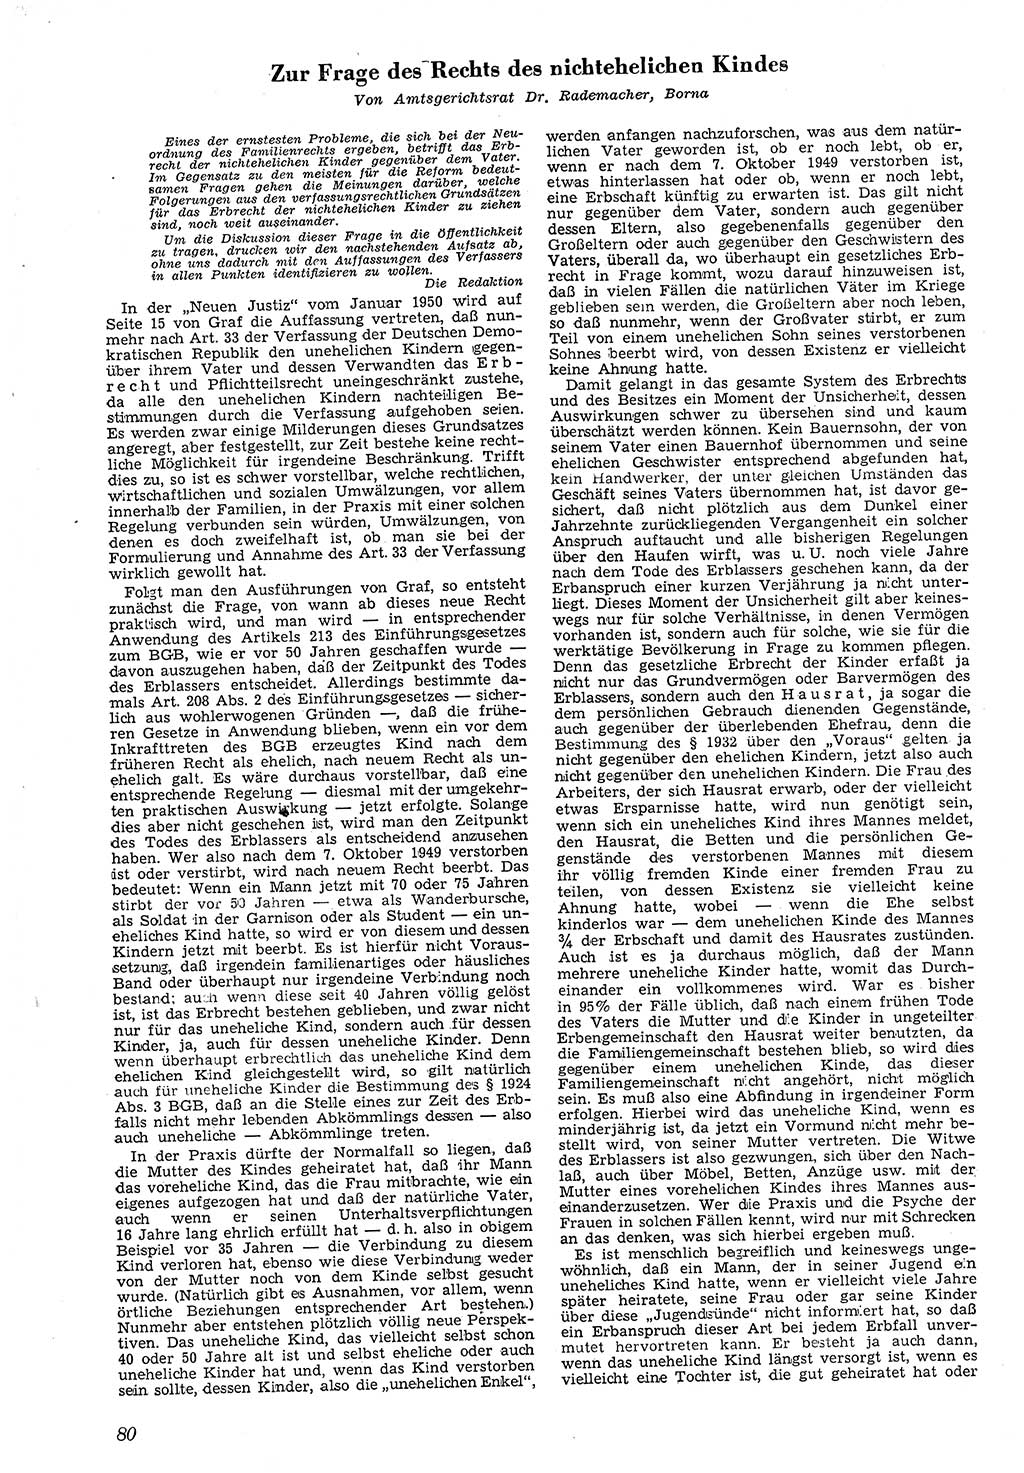 Neue Justiz (NJ), Zeitschrift für Recht und Rechtswissenschaft [Deutsche Demokratische Republik (DDR)], 4. Jahrgang 1950, Seite 80 (NJ DDR 1950, S. 80)